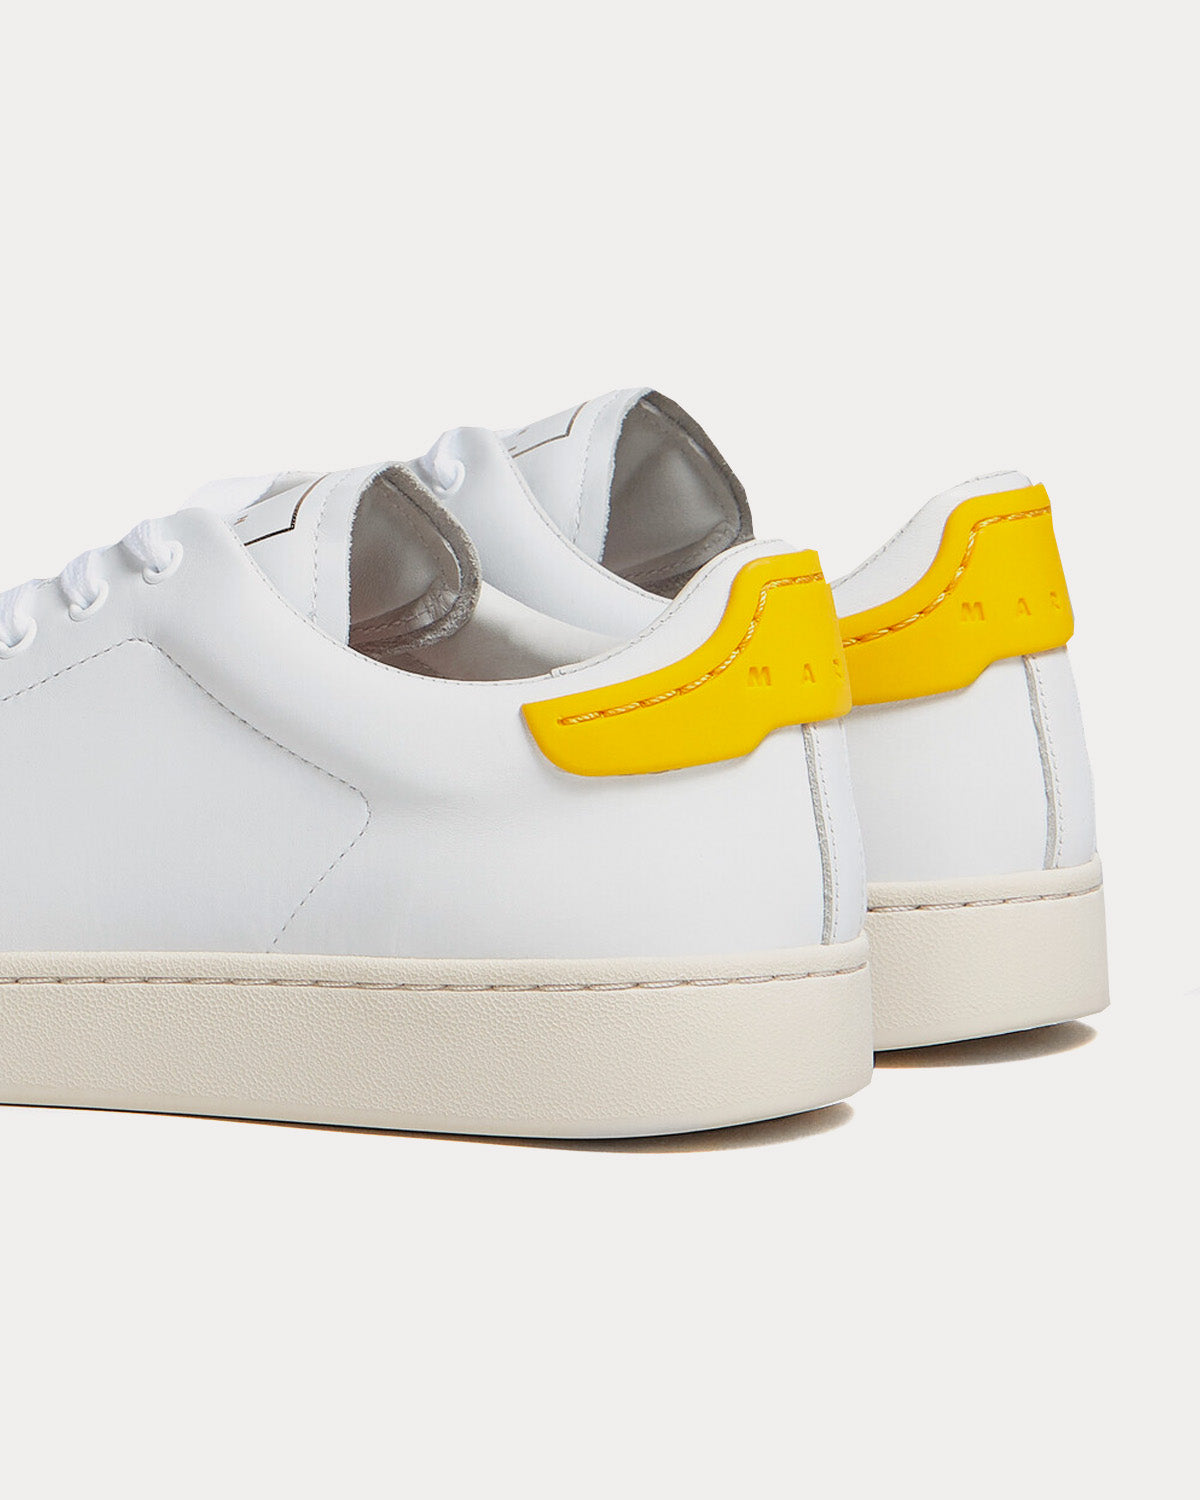 Marni - Dada Bumper White / Yellow Low Top Sneakers